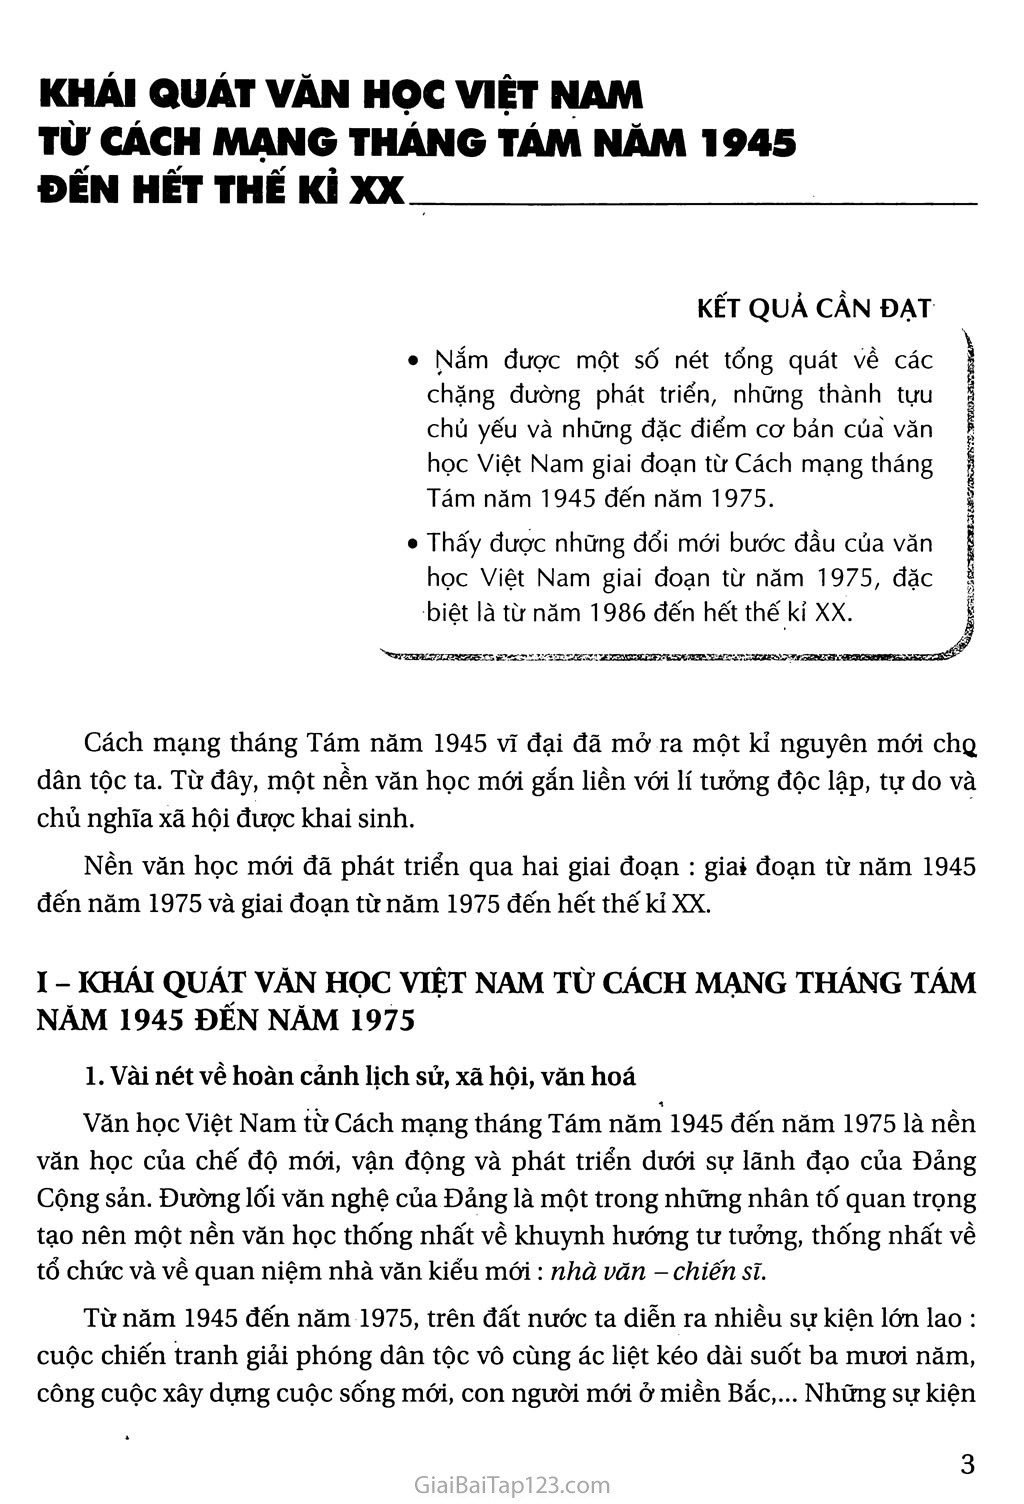 Khái quát văn học Việt Nam từ cách mạng tháng tám năm 1945 đến hết thế kỉ XX trang 1